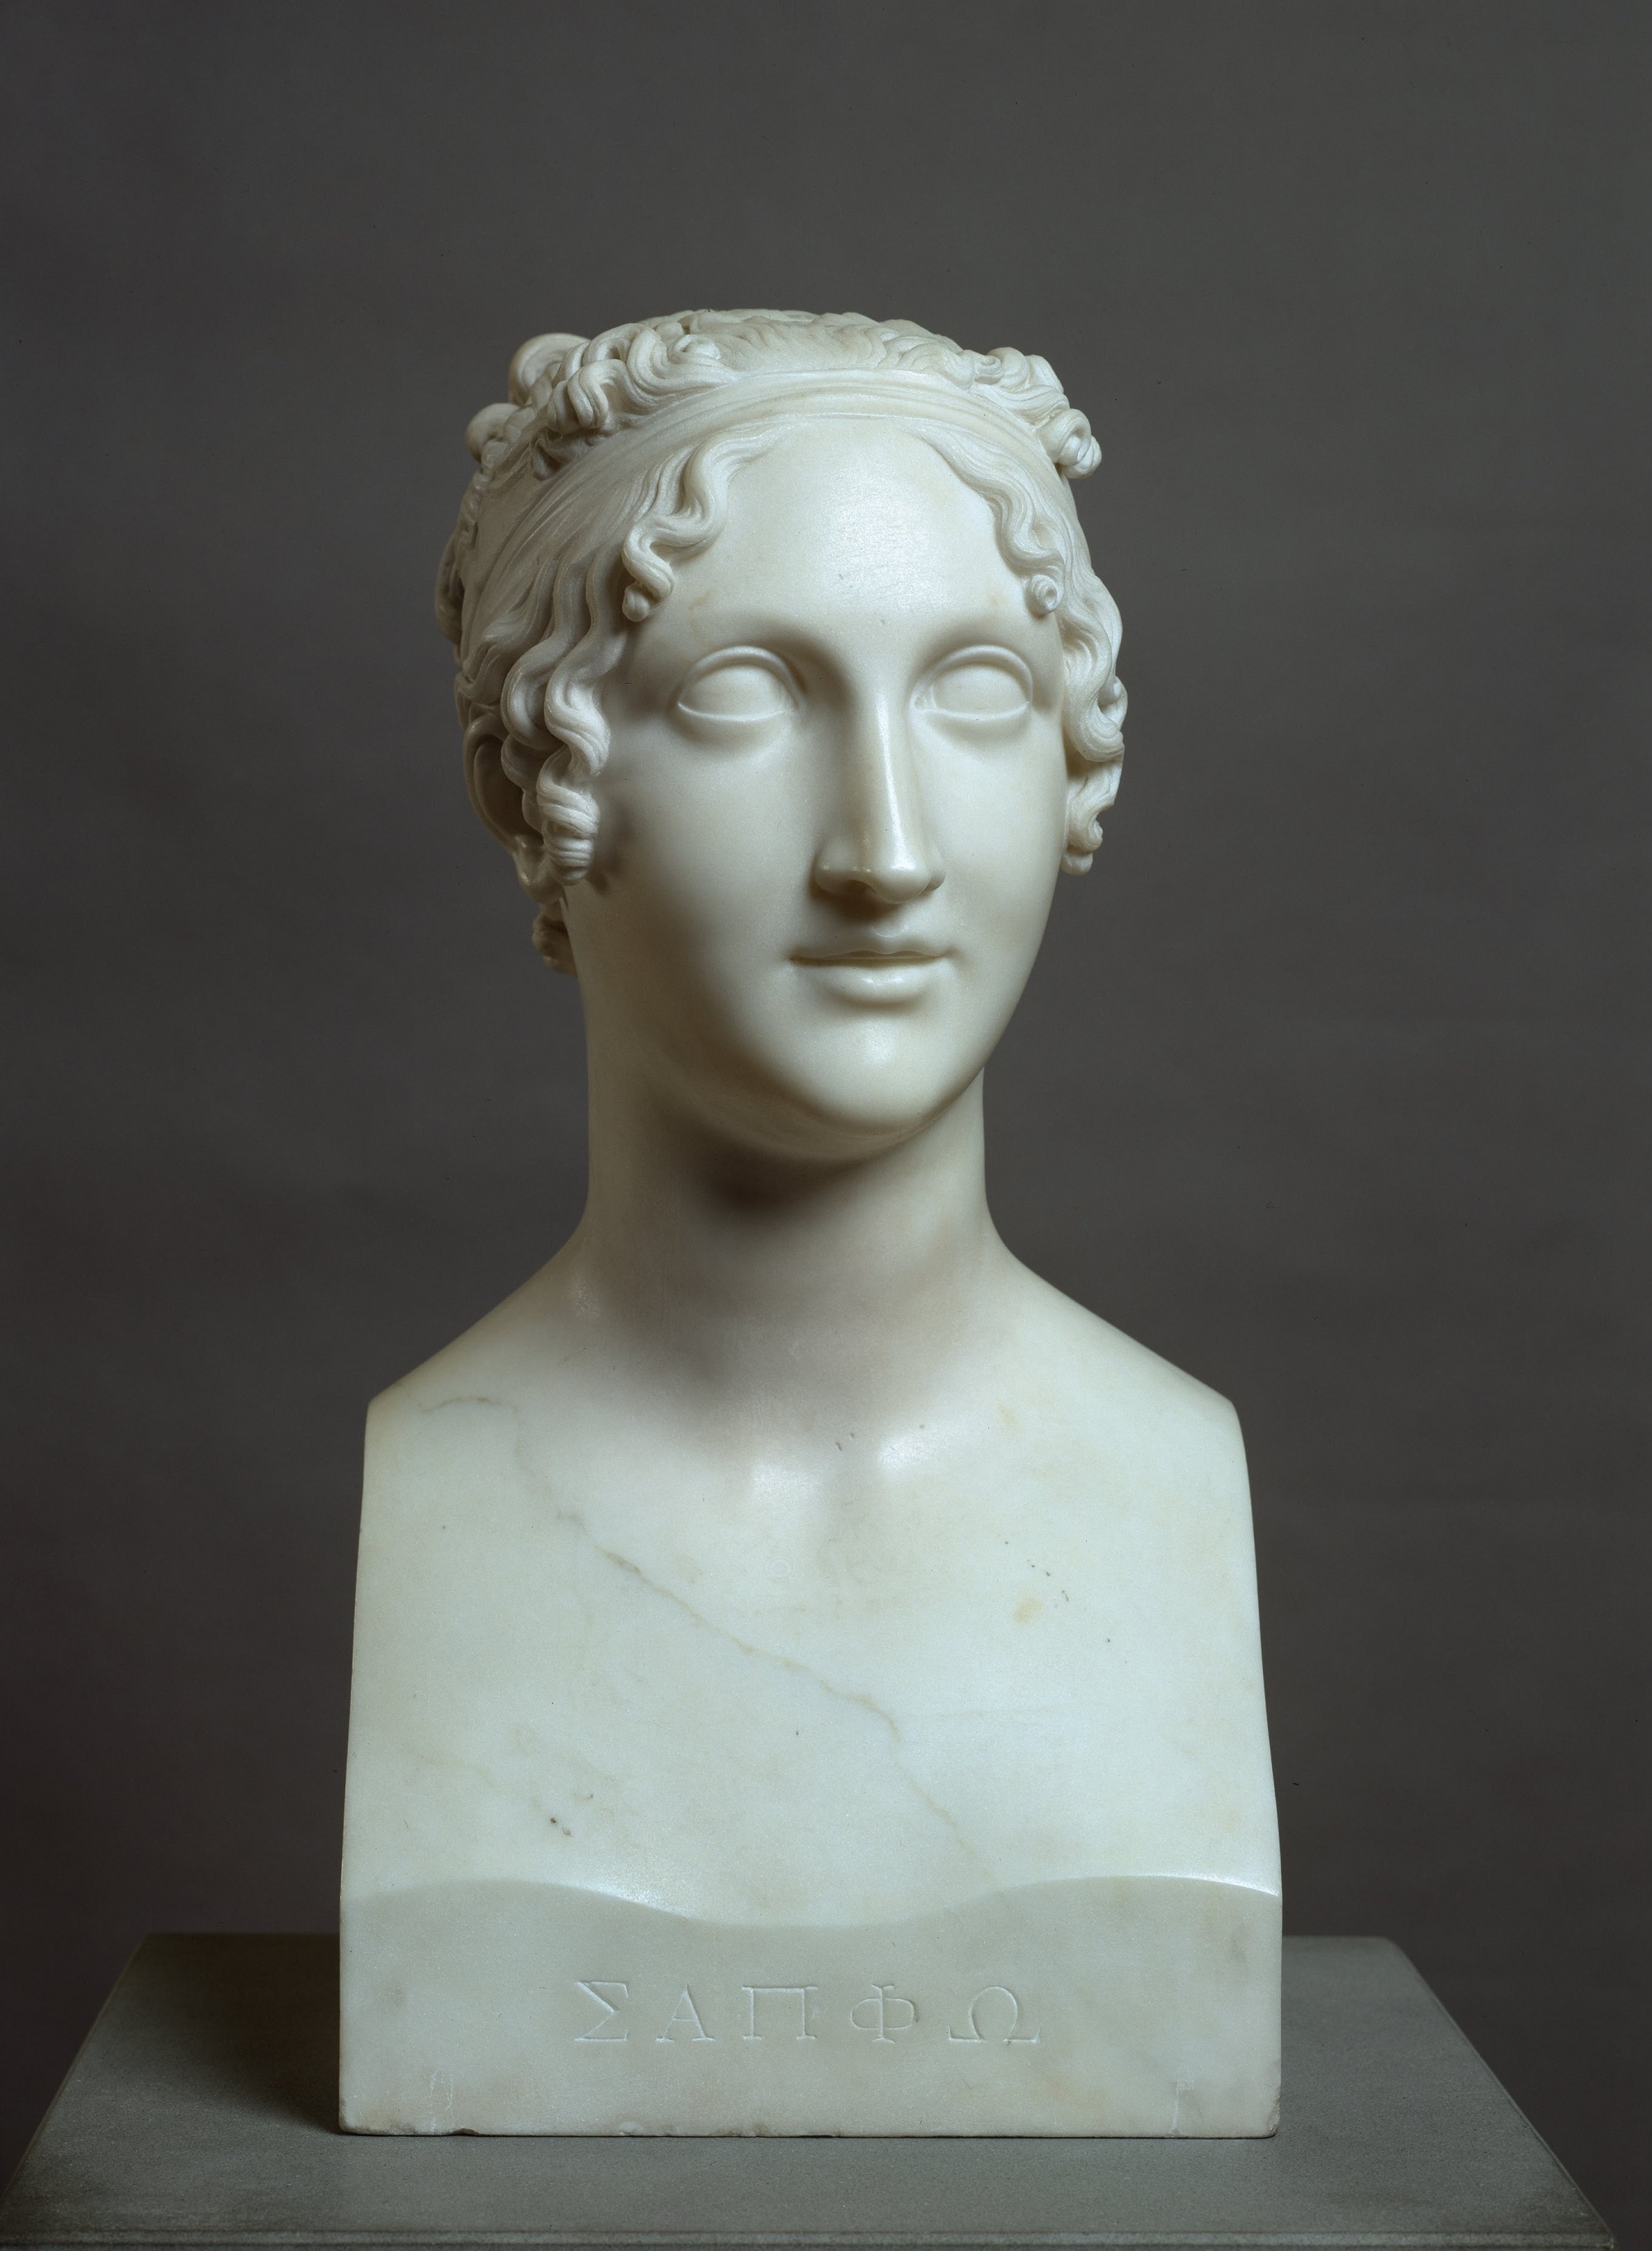 Antonio Canova (1757 - 1822), Vestale (Erma di Saffo), 1819 – 1820, Marmo, cm 49x24,5x27, Galleria Civica d’Arte Moderna e Contemporanea, GAM, Torino